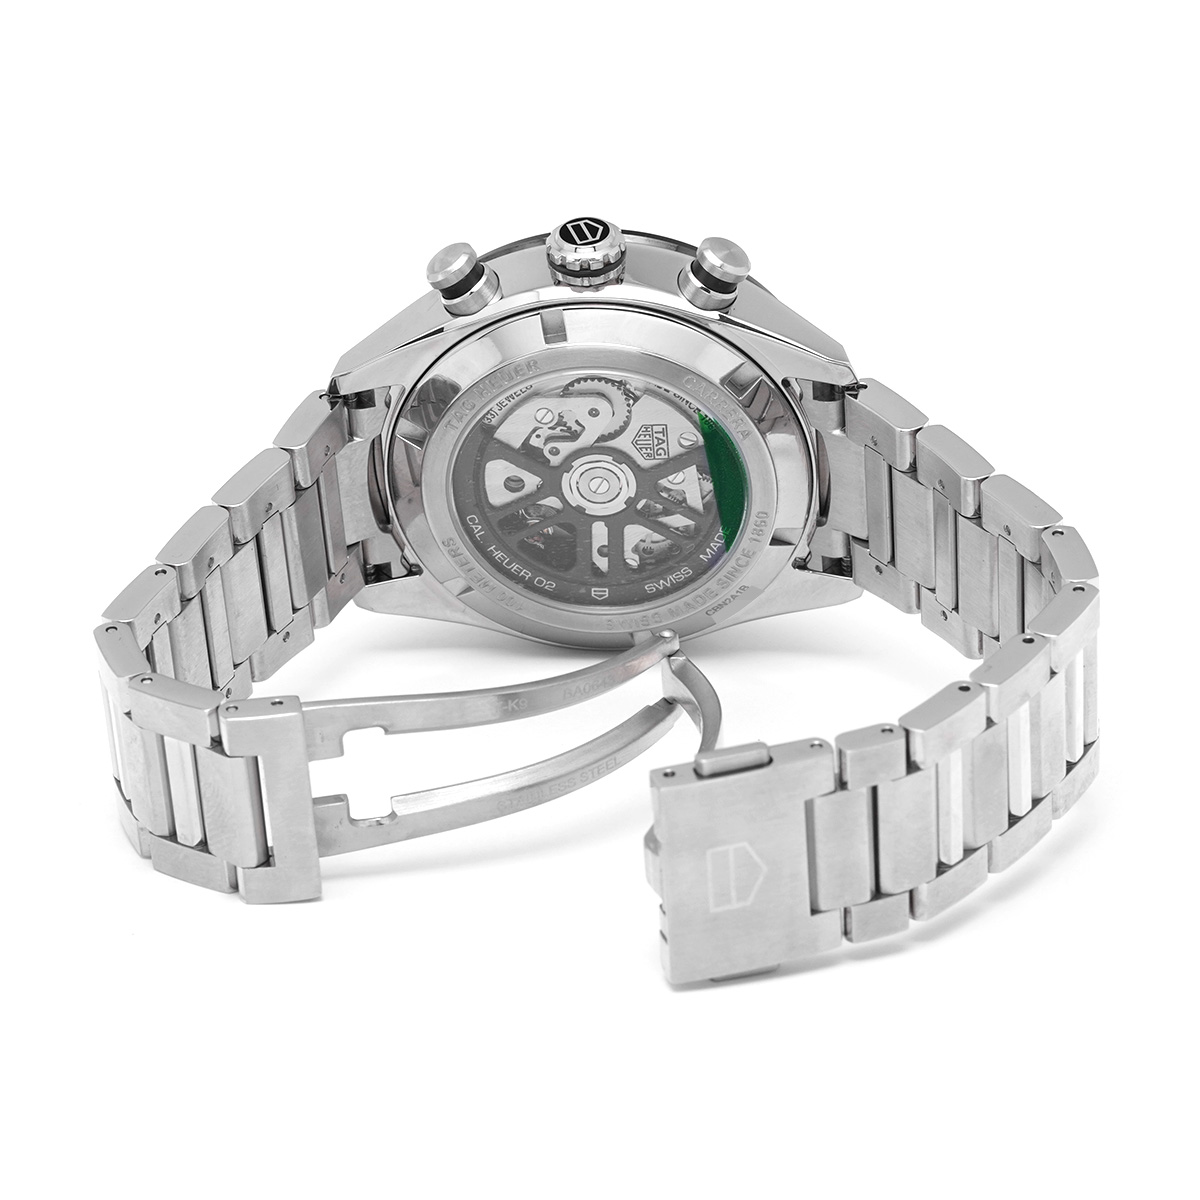 タグ ホイヤー TAG HEUER CBN2A1B.BA0643 ブラック メンズ 腕時計